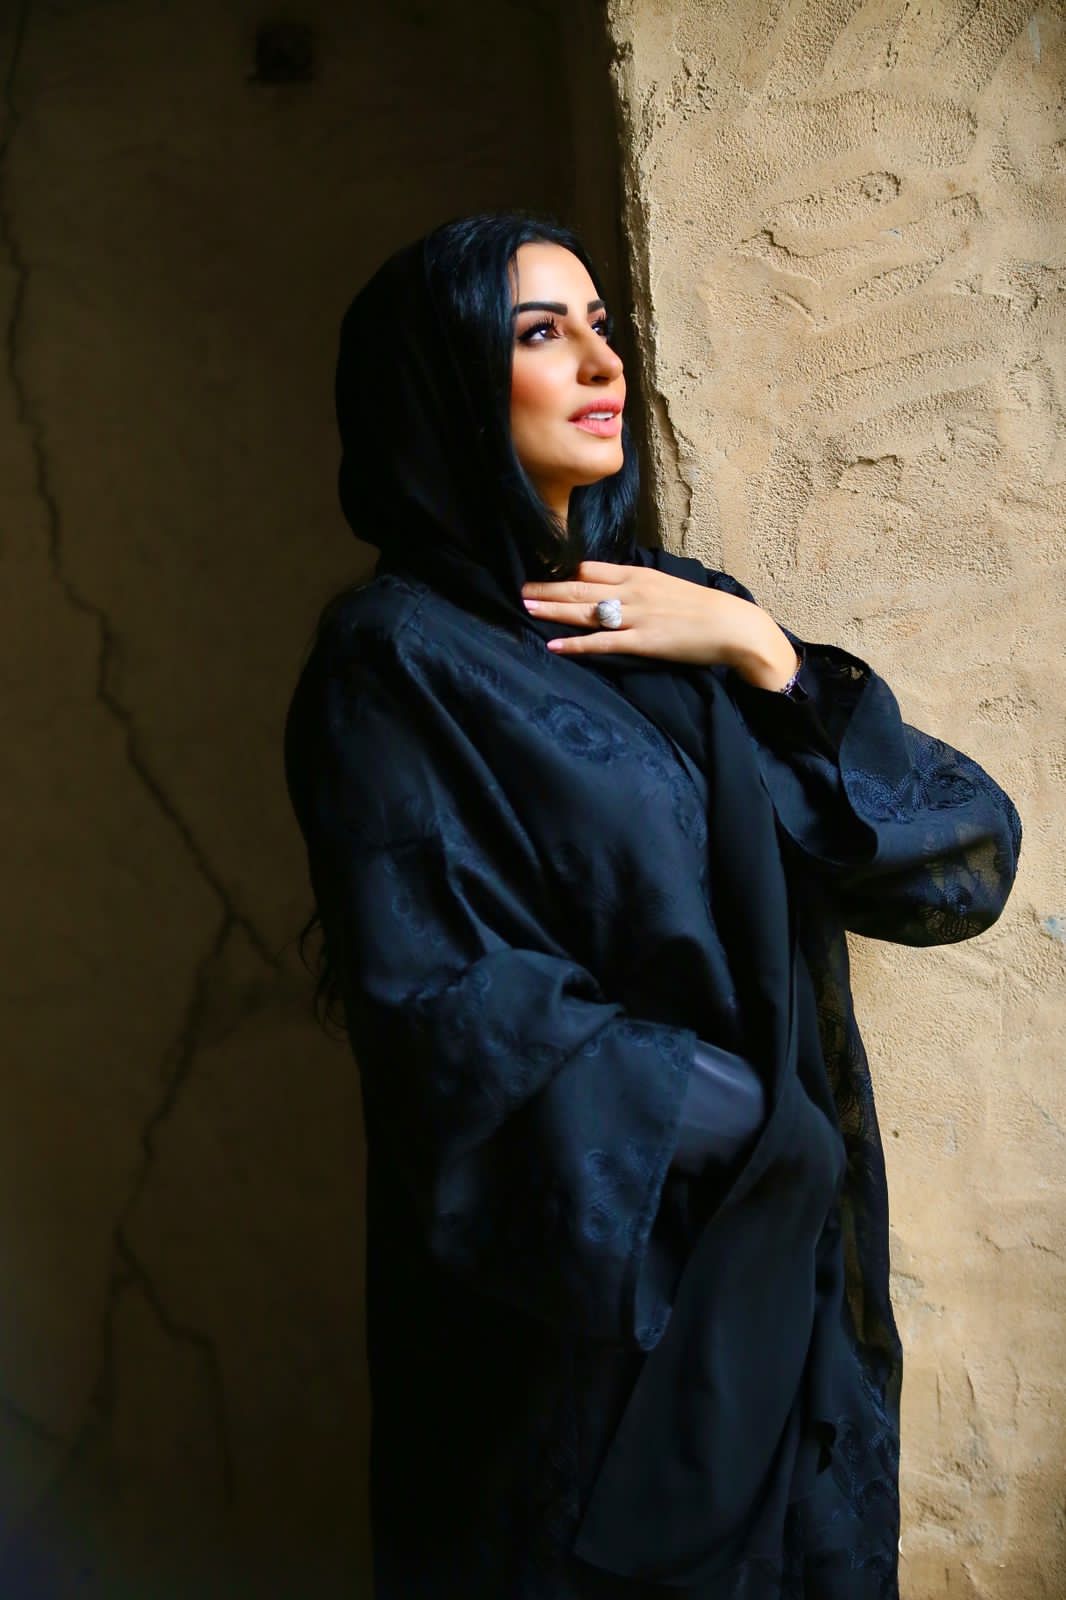 ” ليندا بينالال ” نموذجا بارزا للمرأة العربية الناجحة في قطاع الأعمال والإدارة